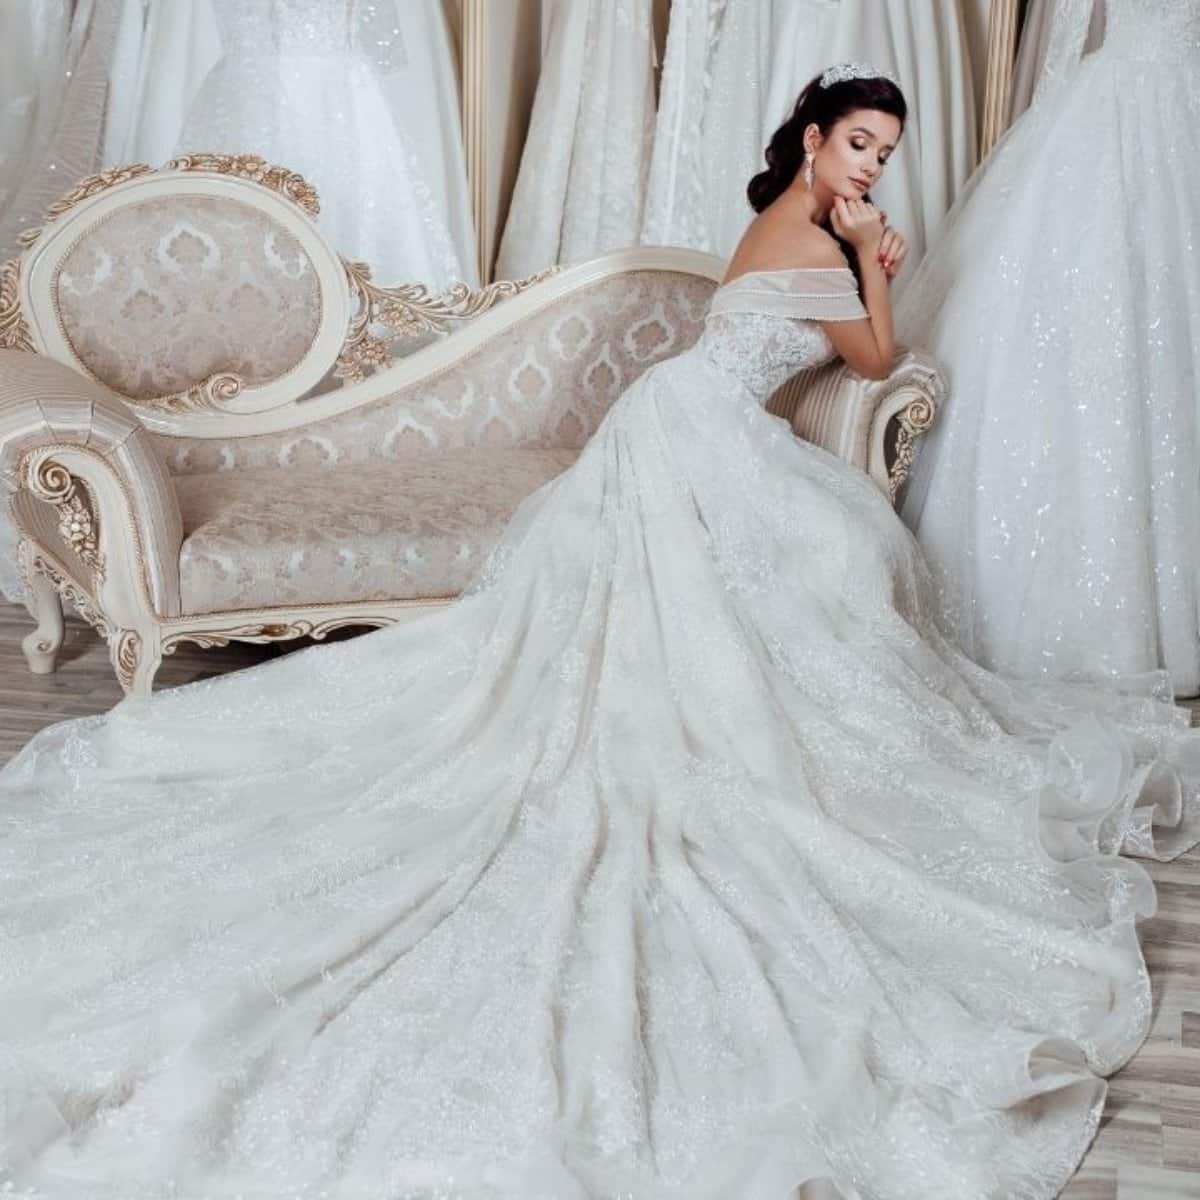 Vestido de noiva estilo princesa#inspirações